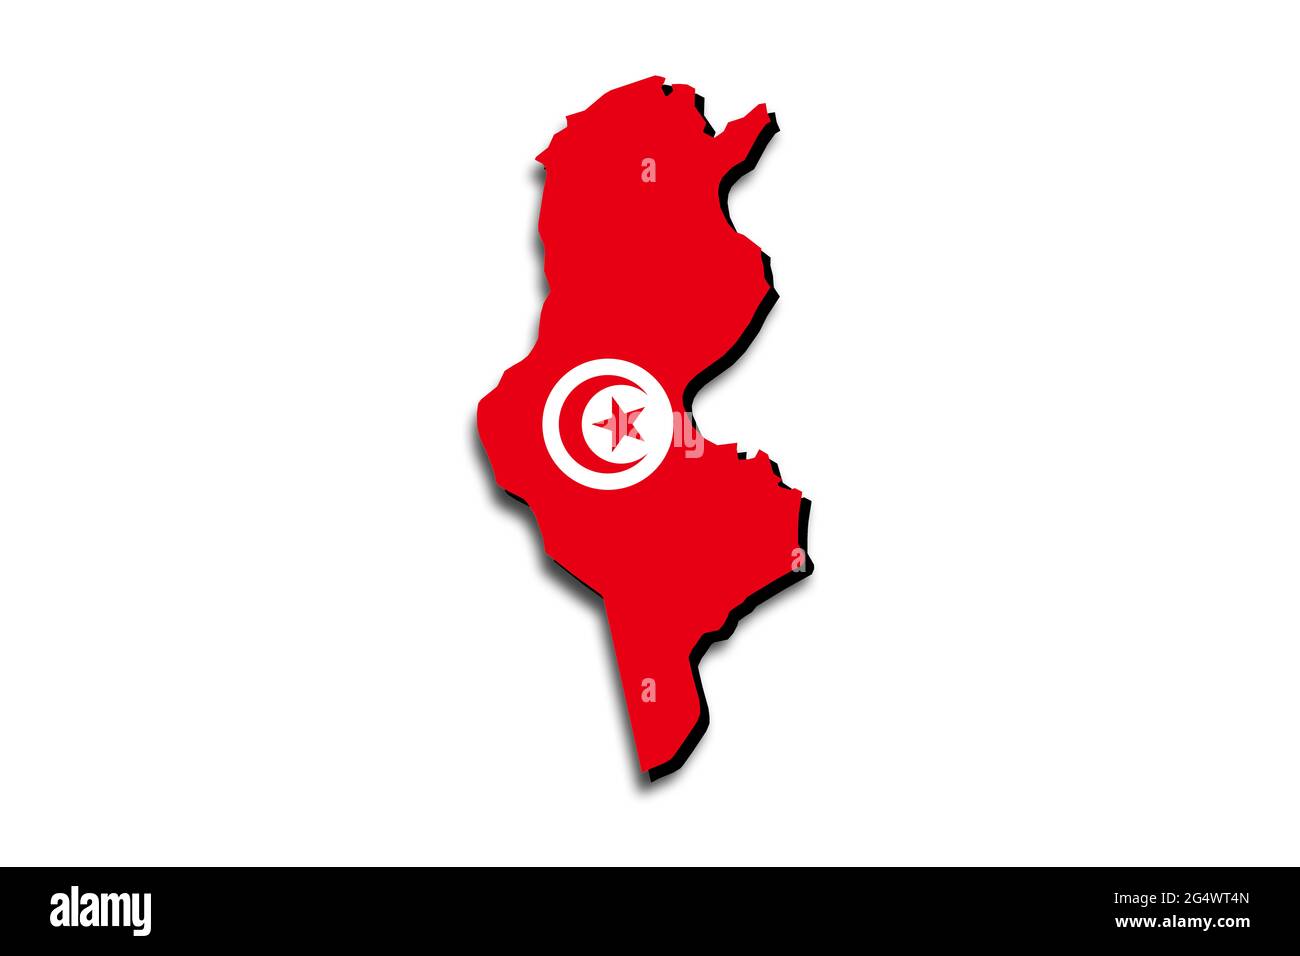 Carte de la Tunisie avec le drapeau national superposé sur le pays. Graphiques 3D projetant une ombre sur l'arrière-plan blanc Banque D'Images